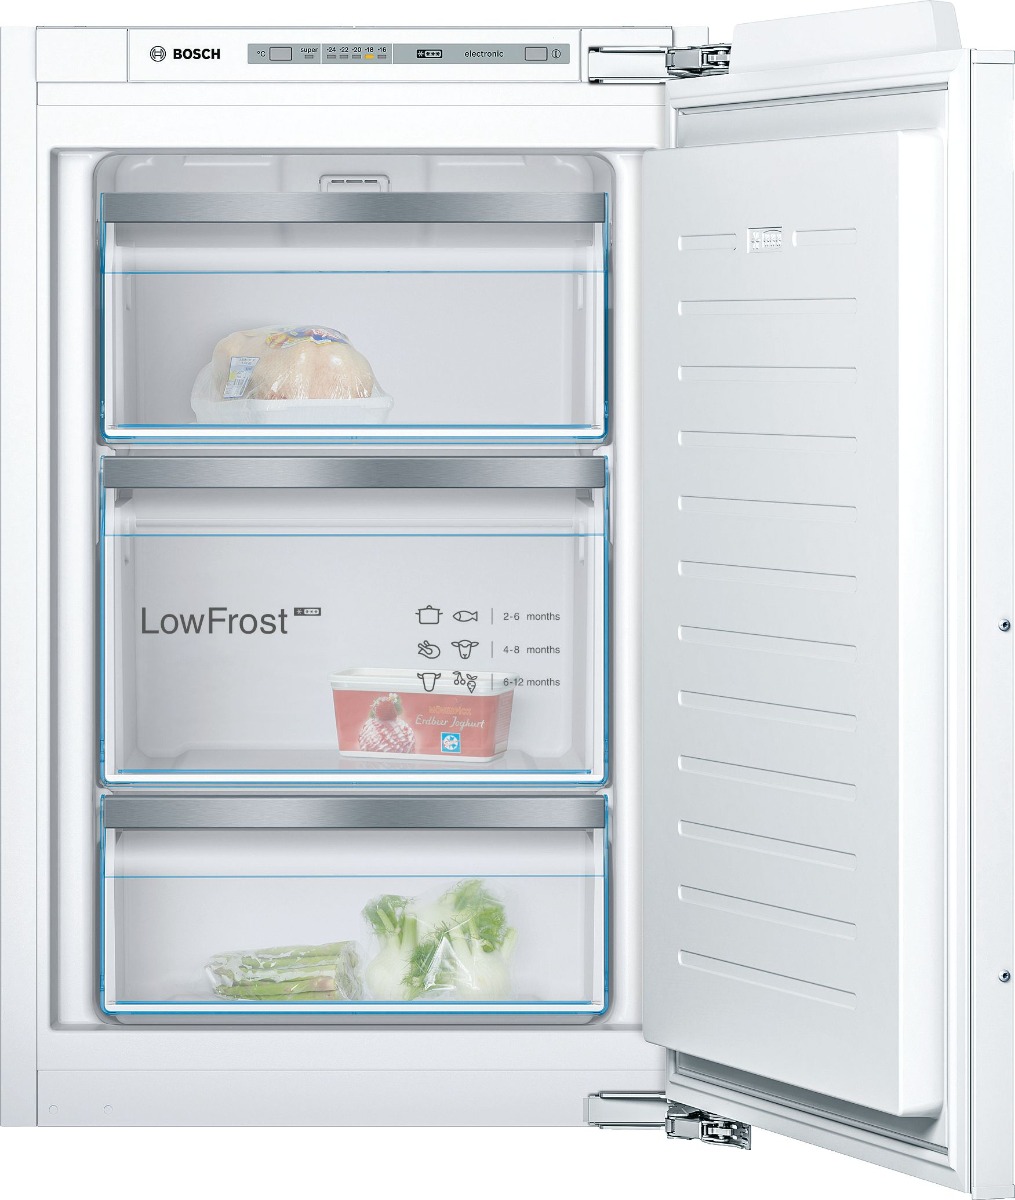 Bosch GIV21AFE0 Integrated Freezer *Display Model*